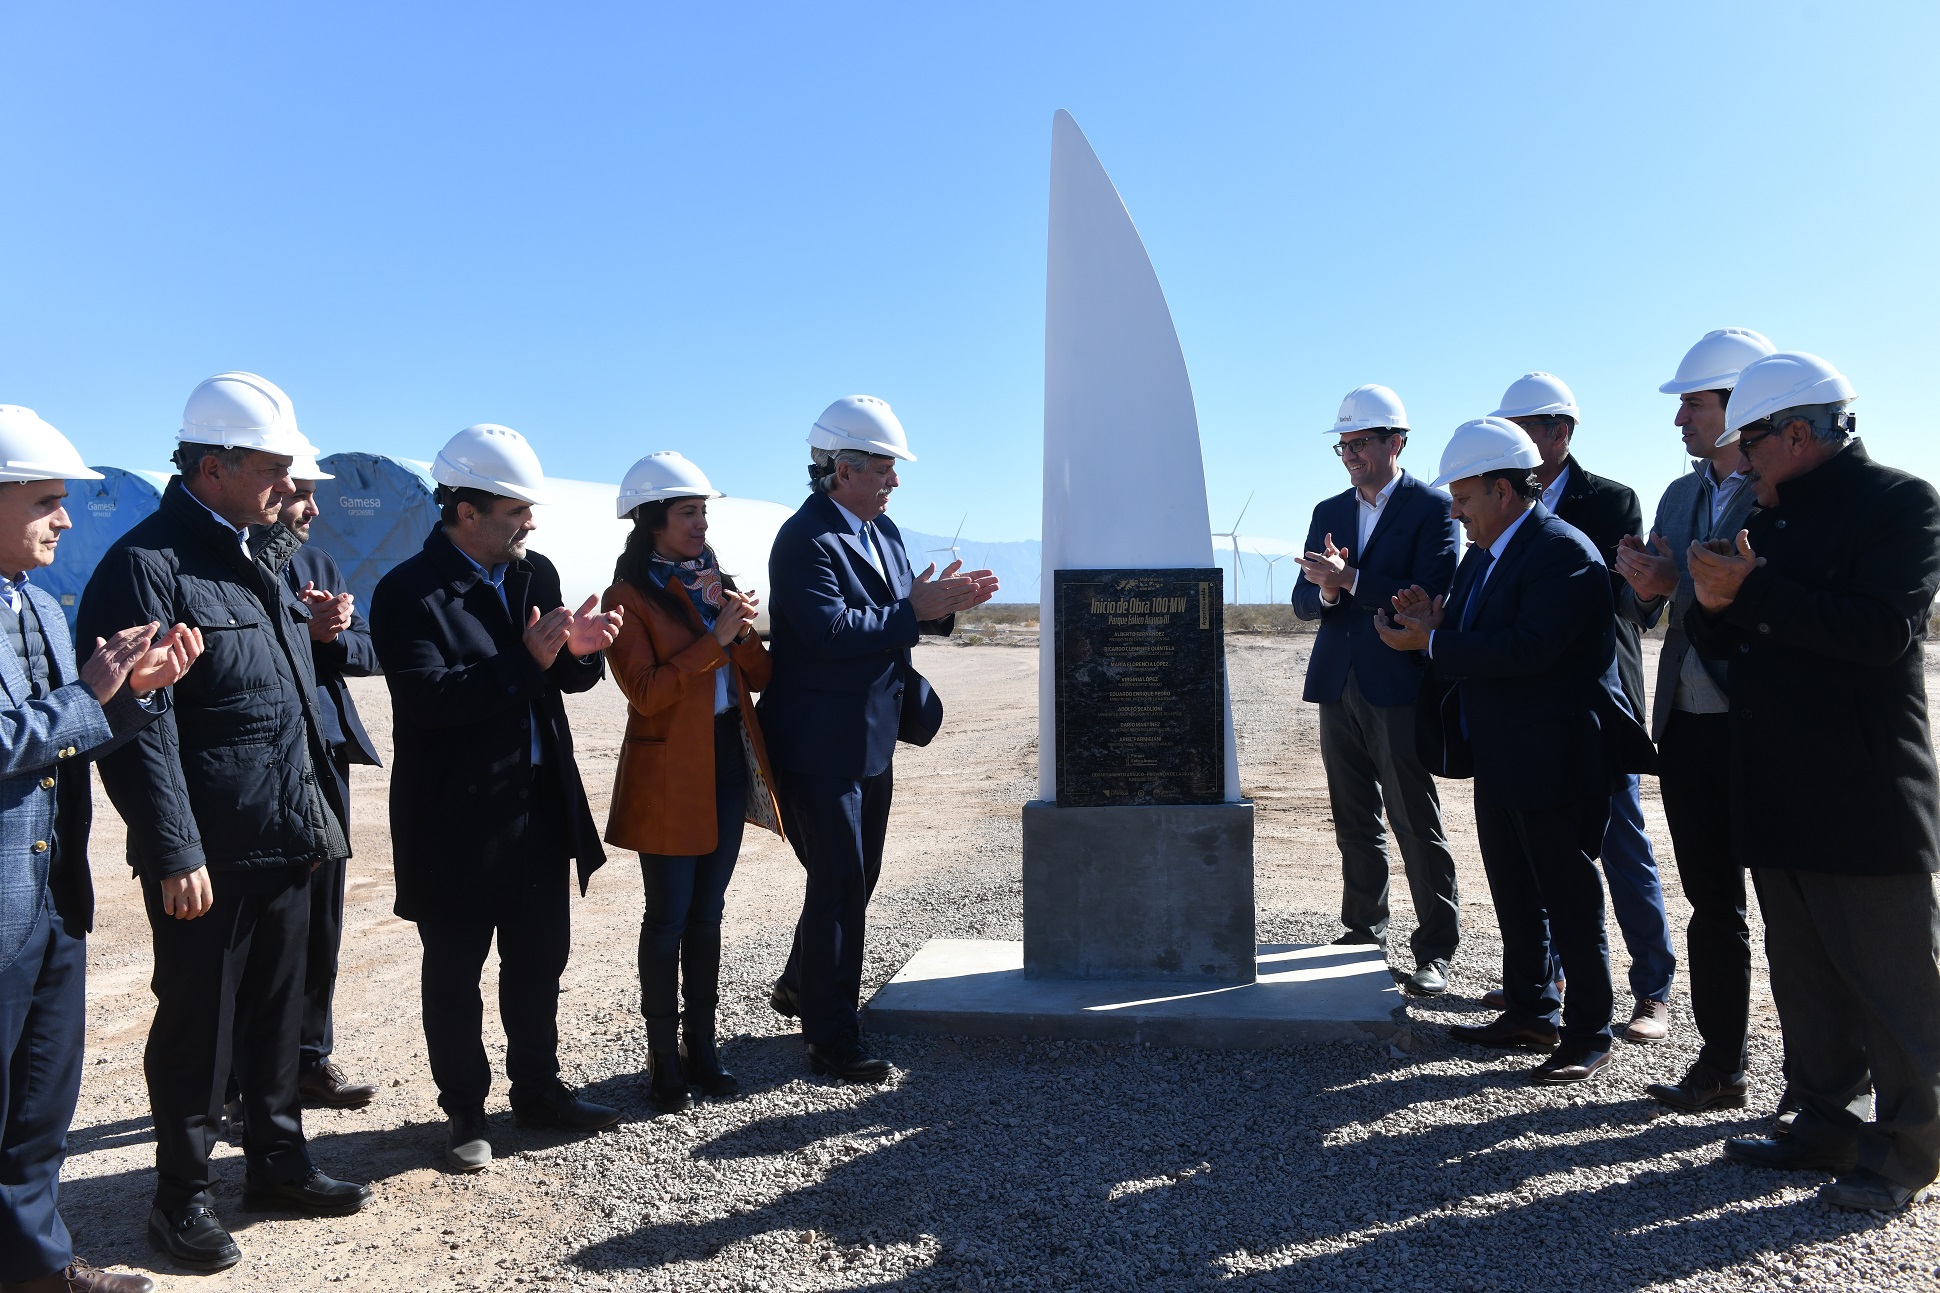 La Rioja: El presidente visitó un parque eólico, recorrió la ampliación de una fábrica textil e inauguró una planta de tejidos